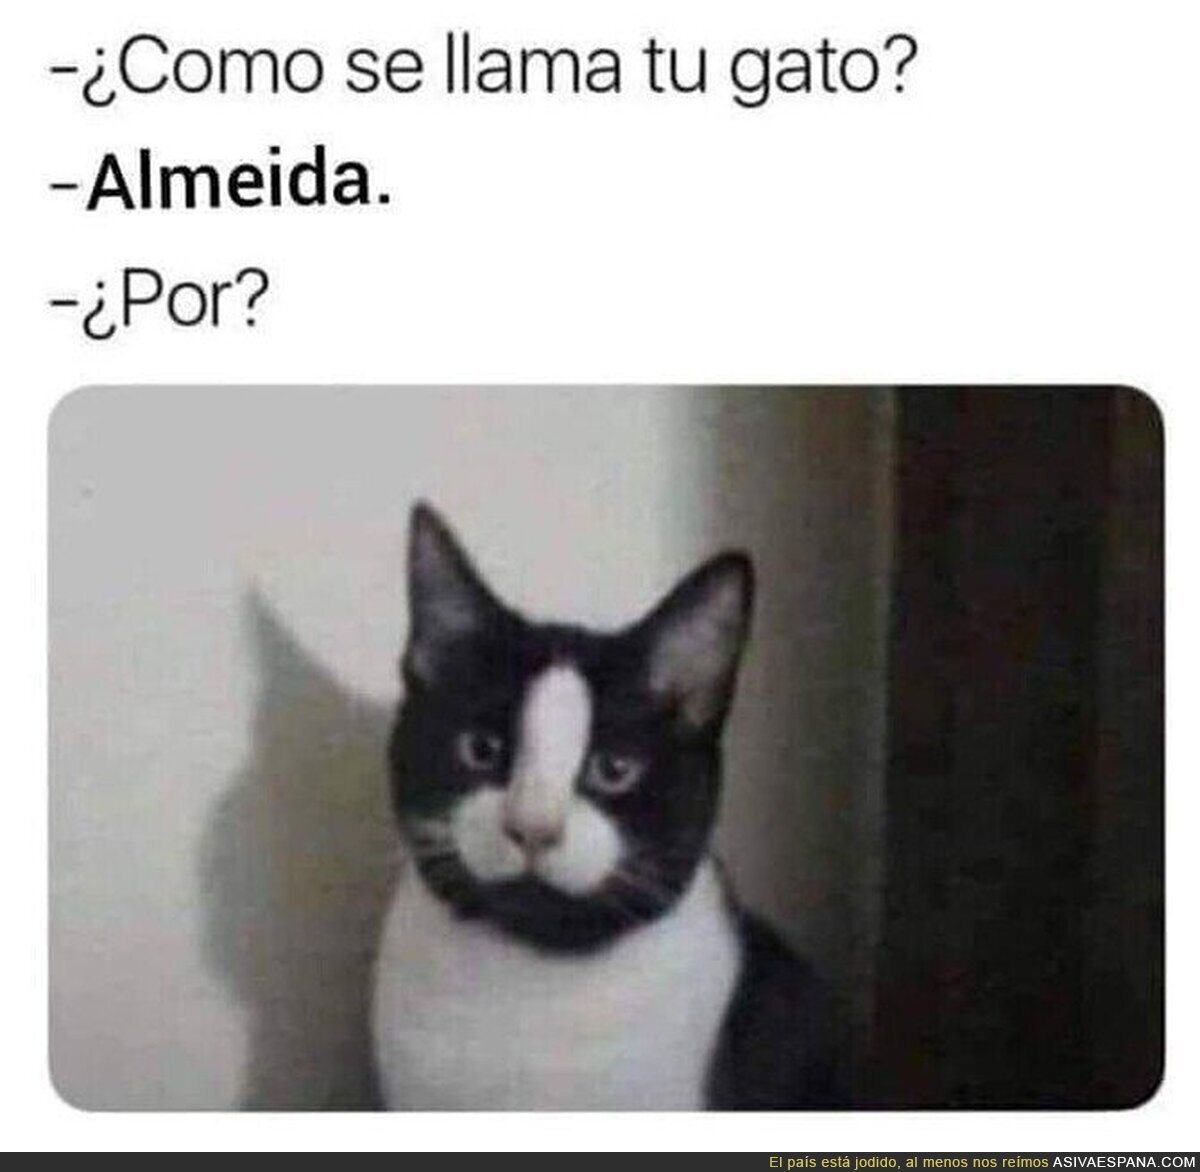 El gato Almeida